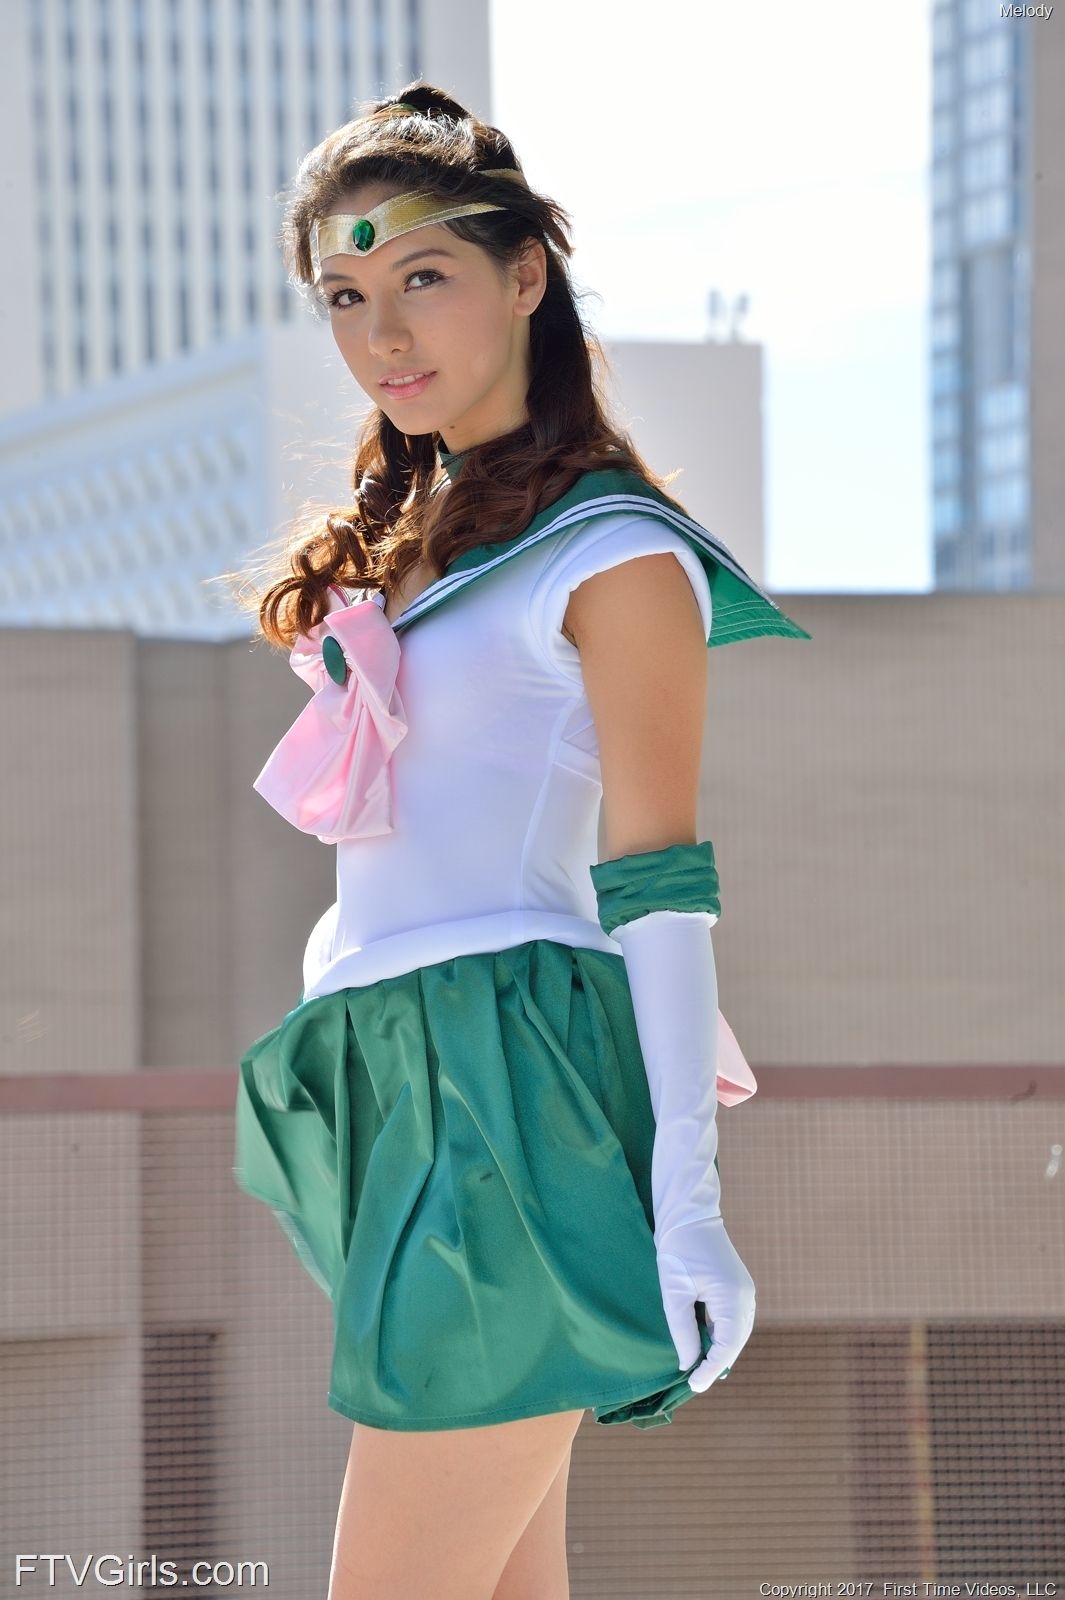 Melody Wylde as Sailor Jupiter 1